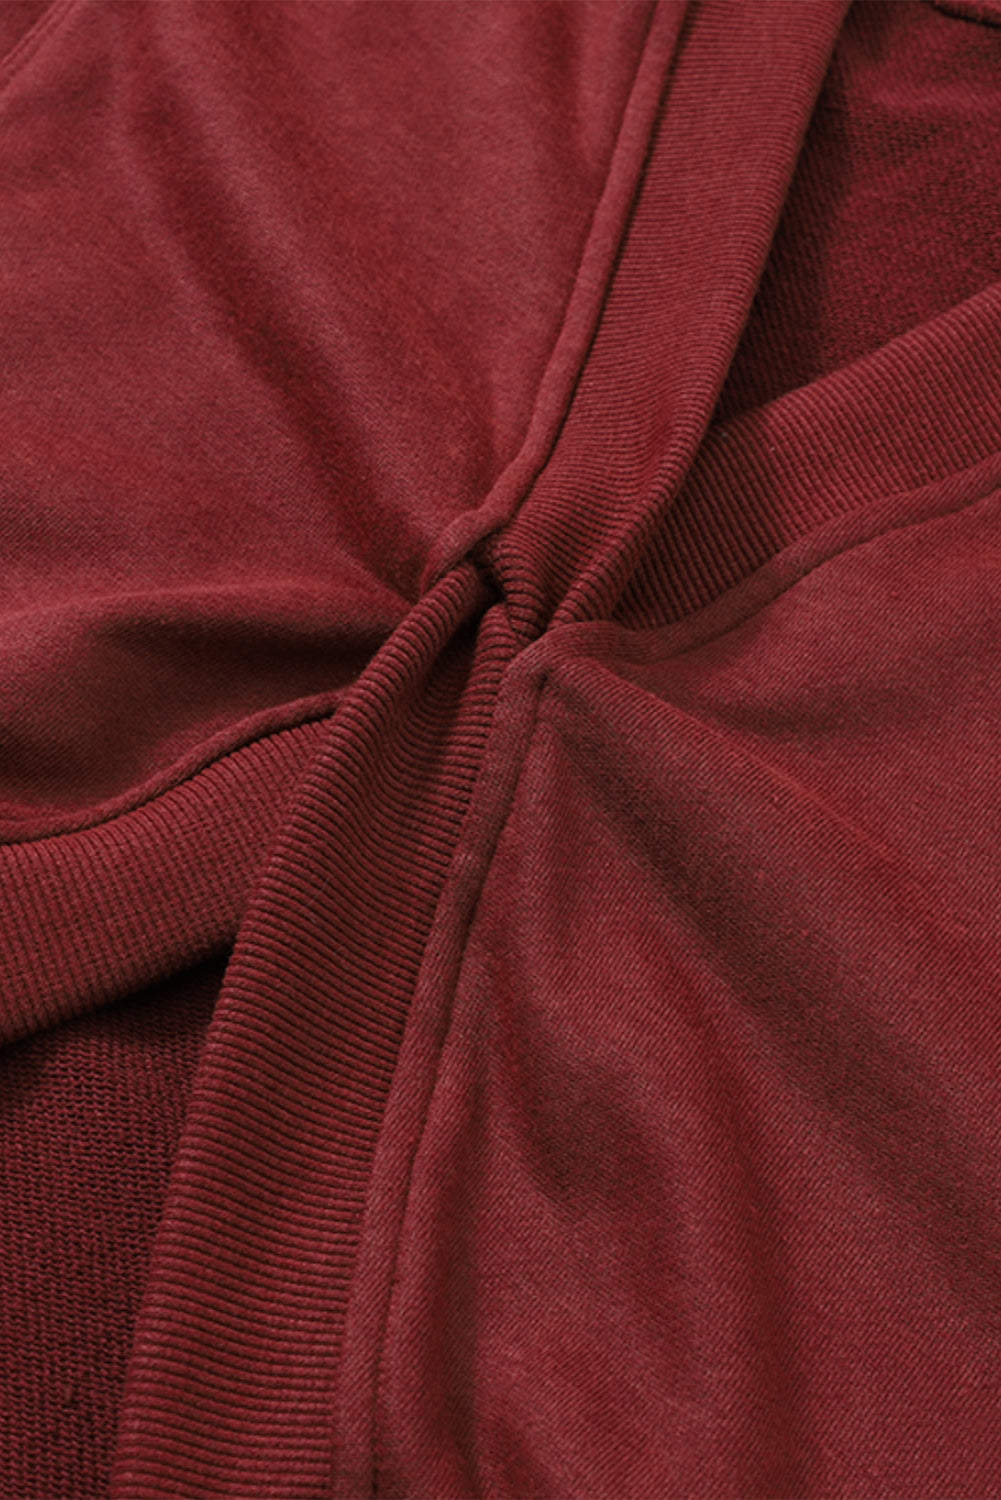 Fiery Red Exposed Seam Twist Open Back Oversized Sweatshirt